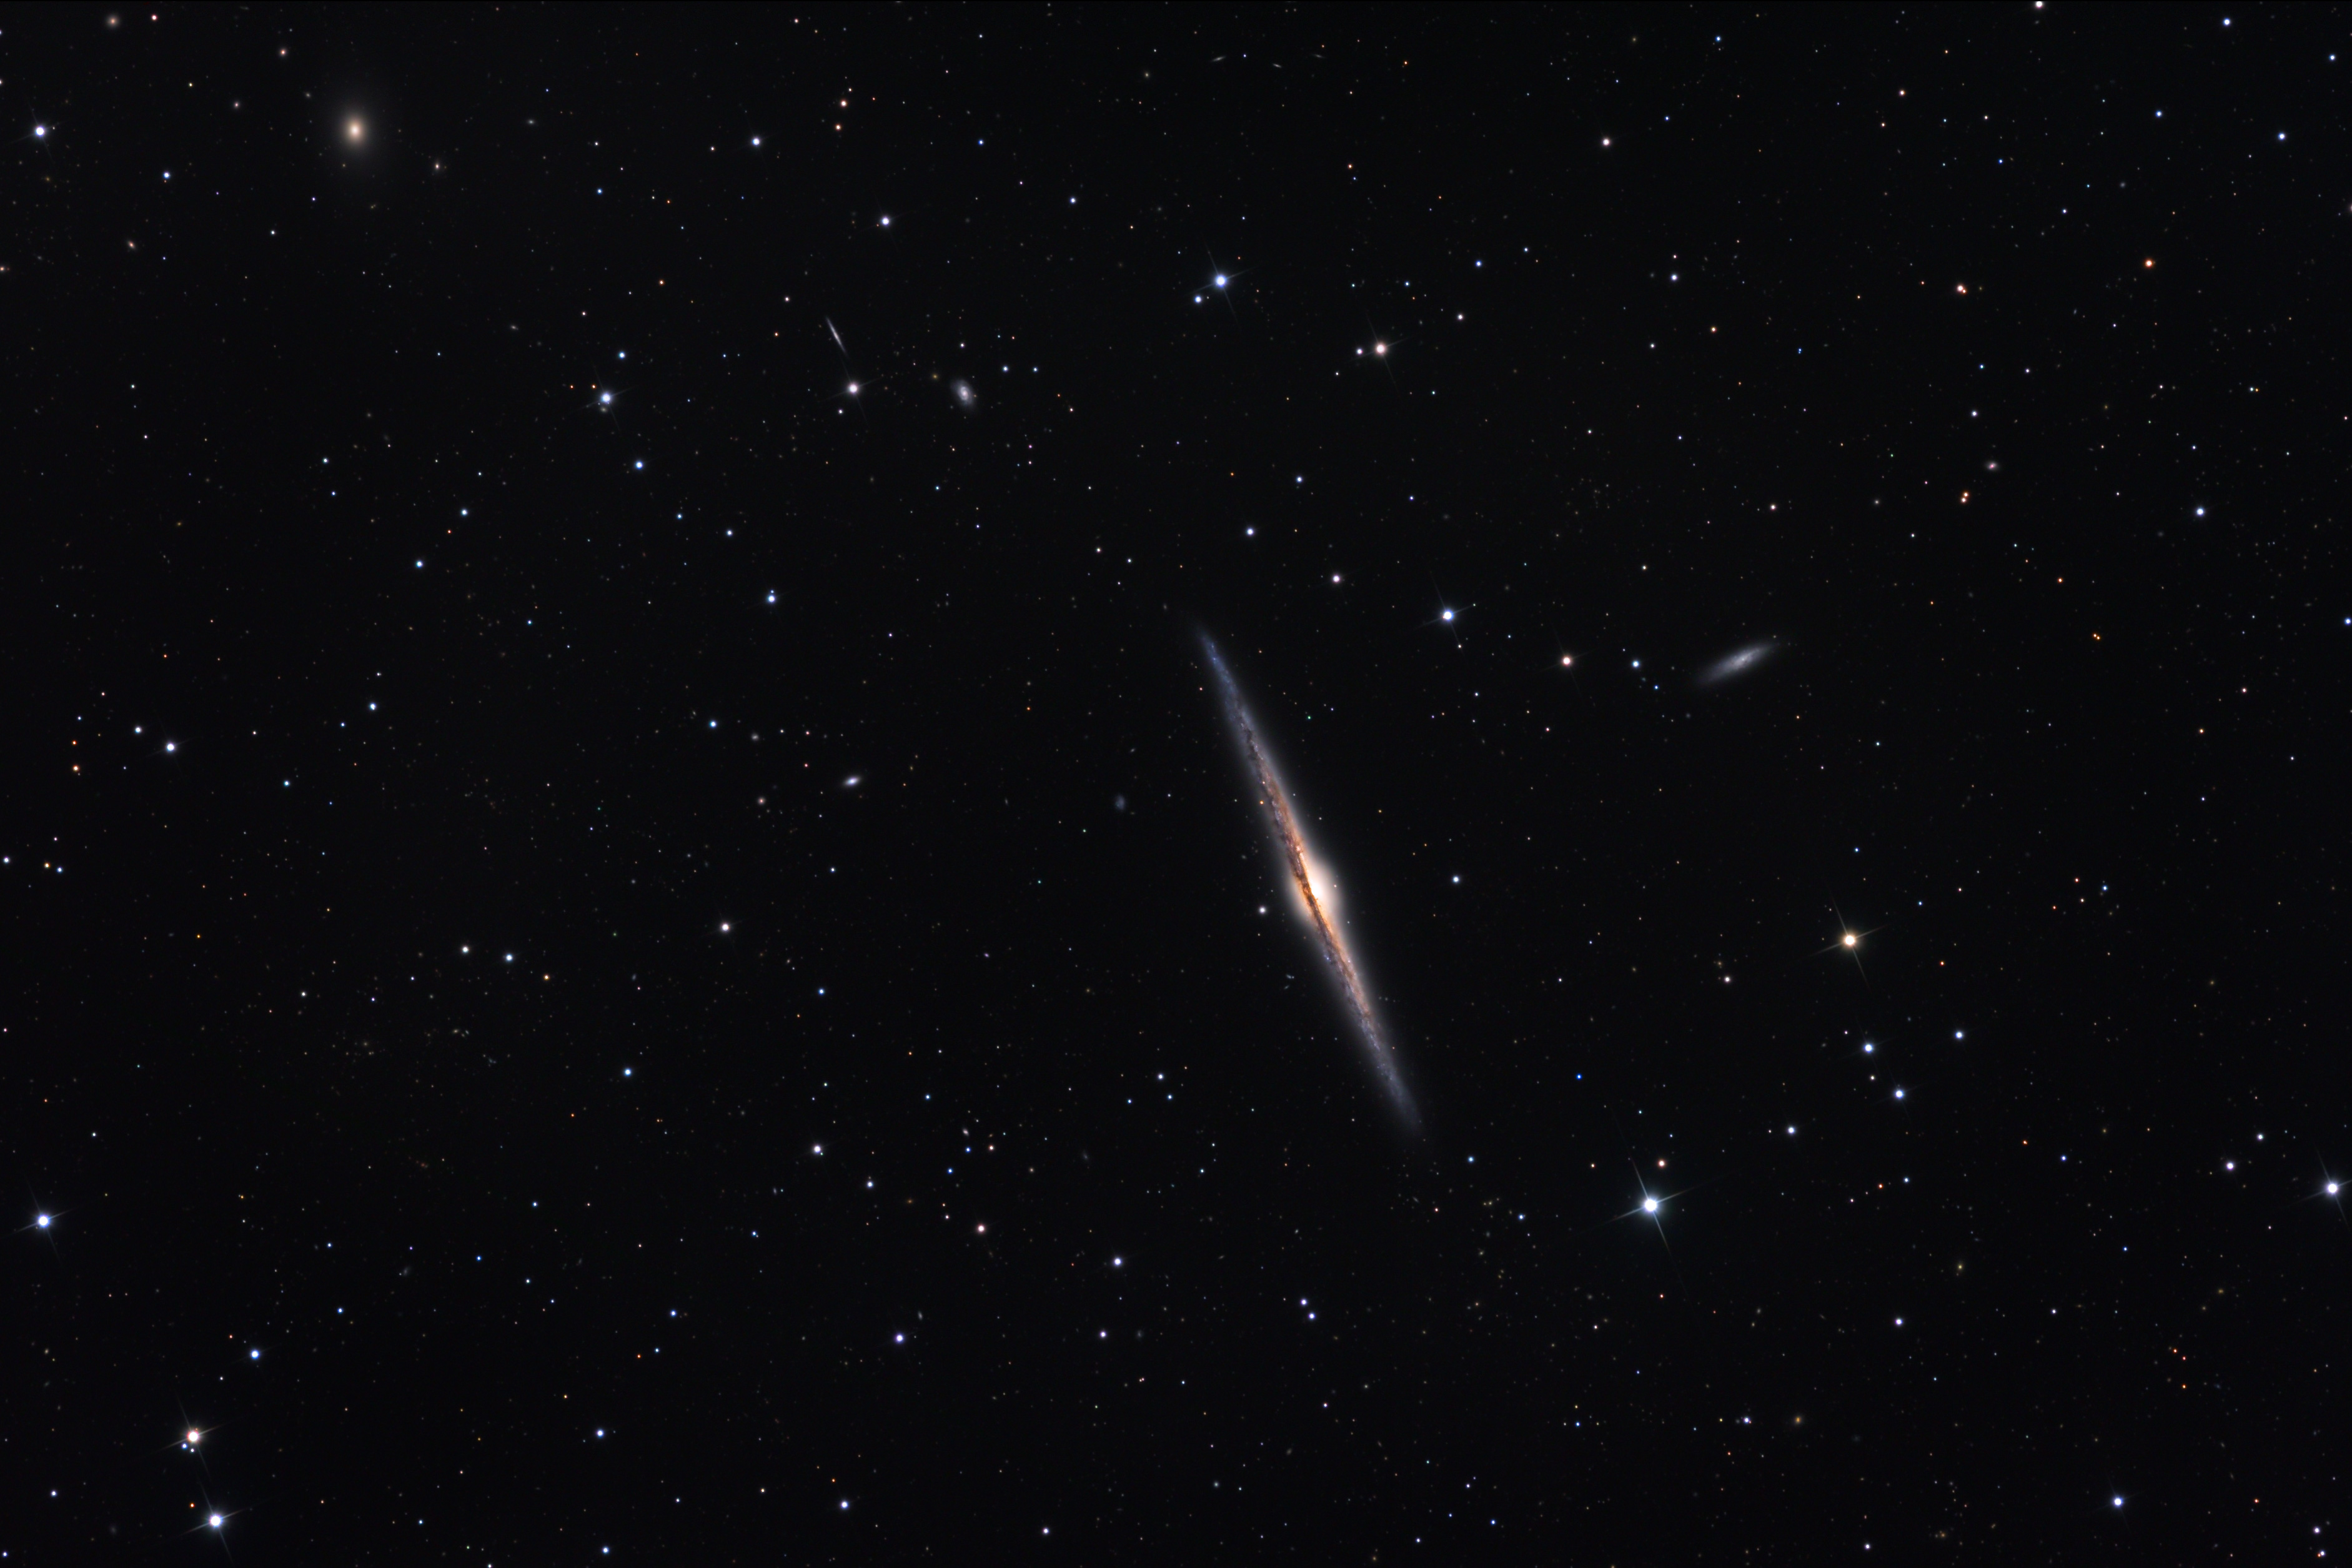 NGC 4565, galaxie vue par la tranche